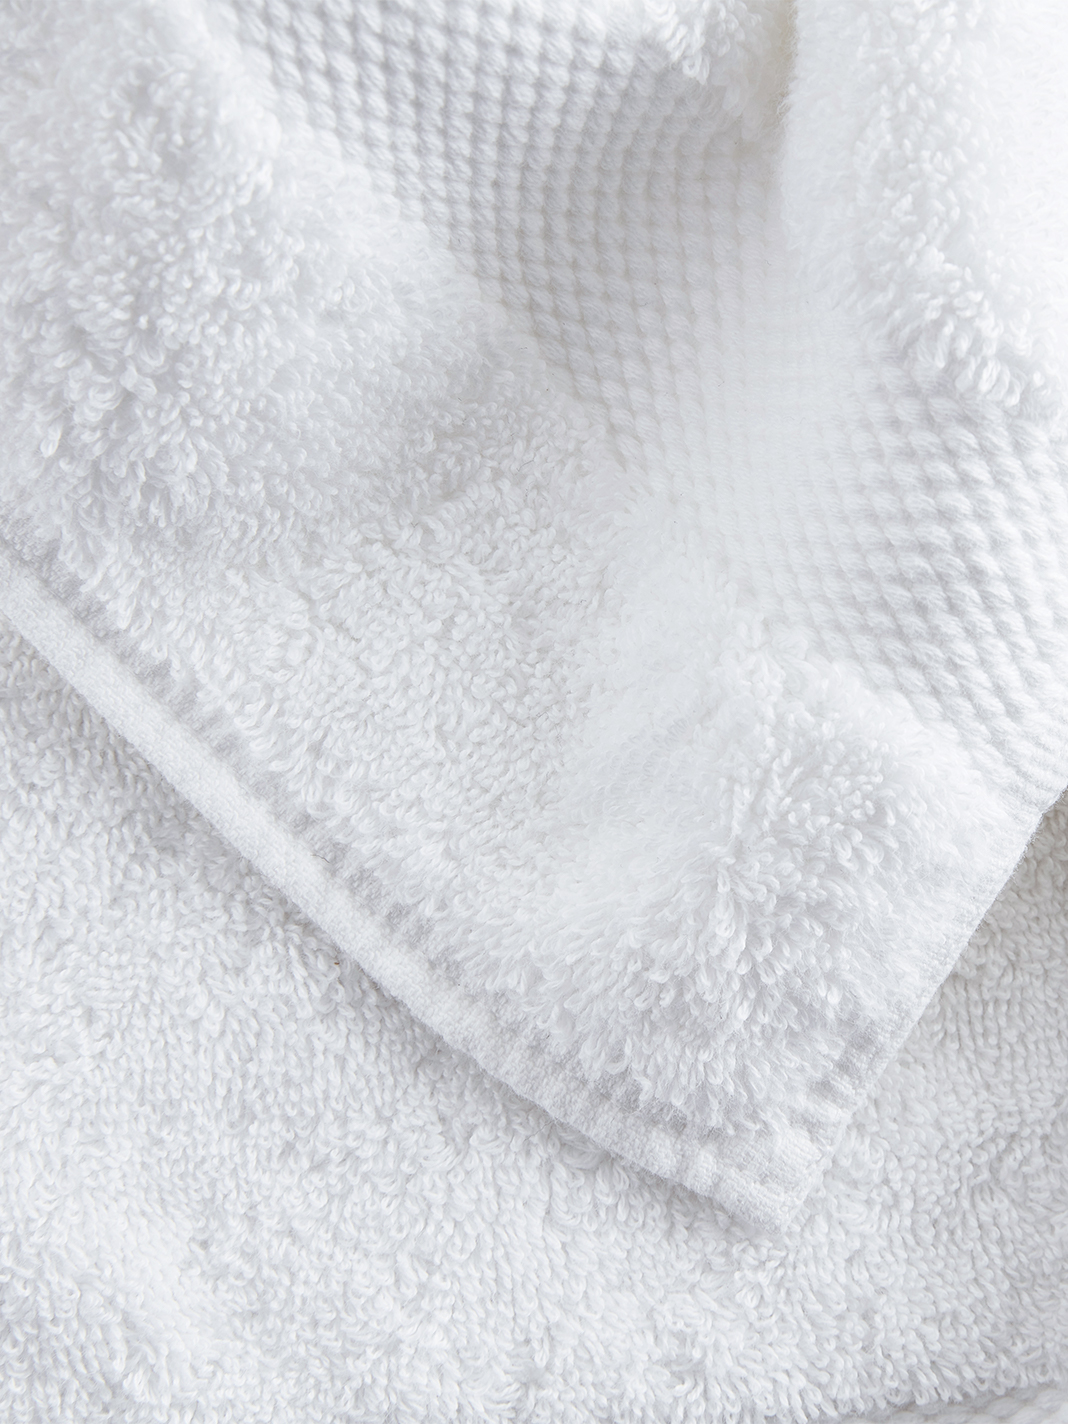 White_Plush_BathTowelSet_Lifestyle3.jpeg Plush Bath Towel Starter Bundle - Slide 3